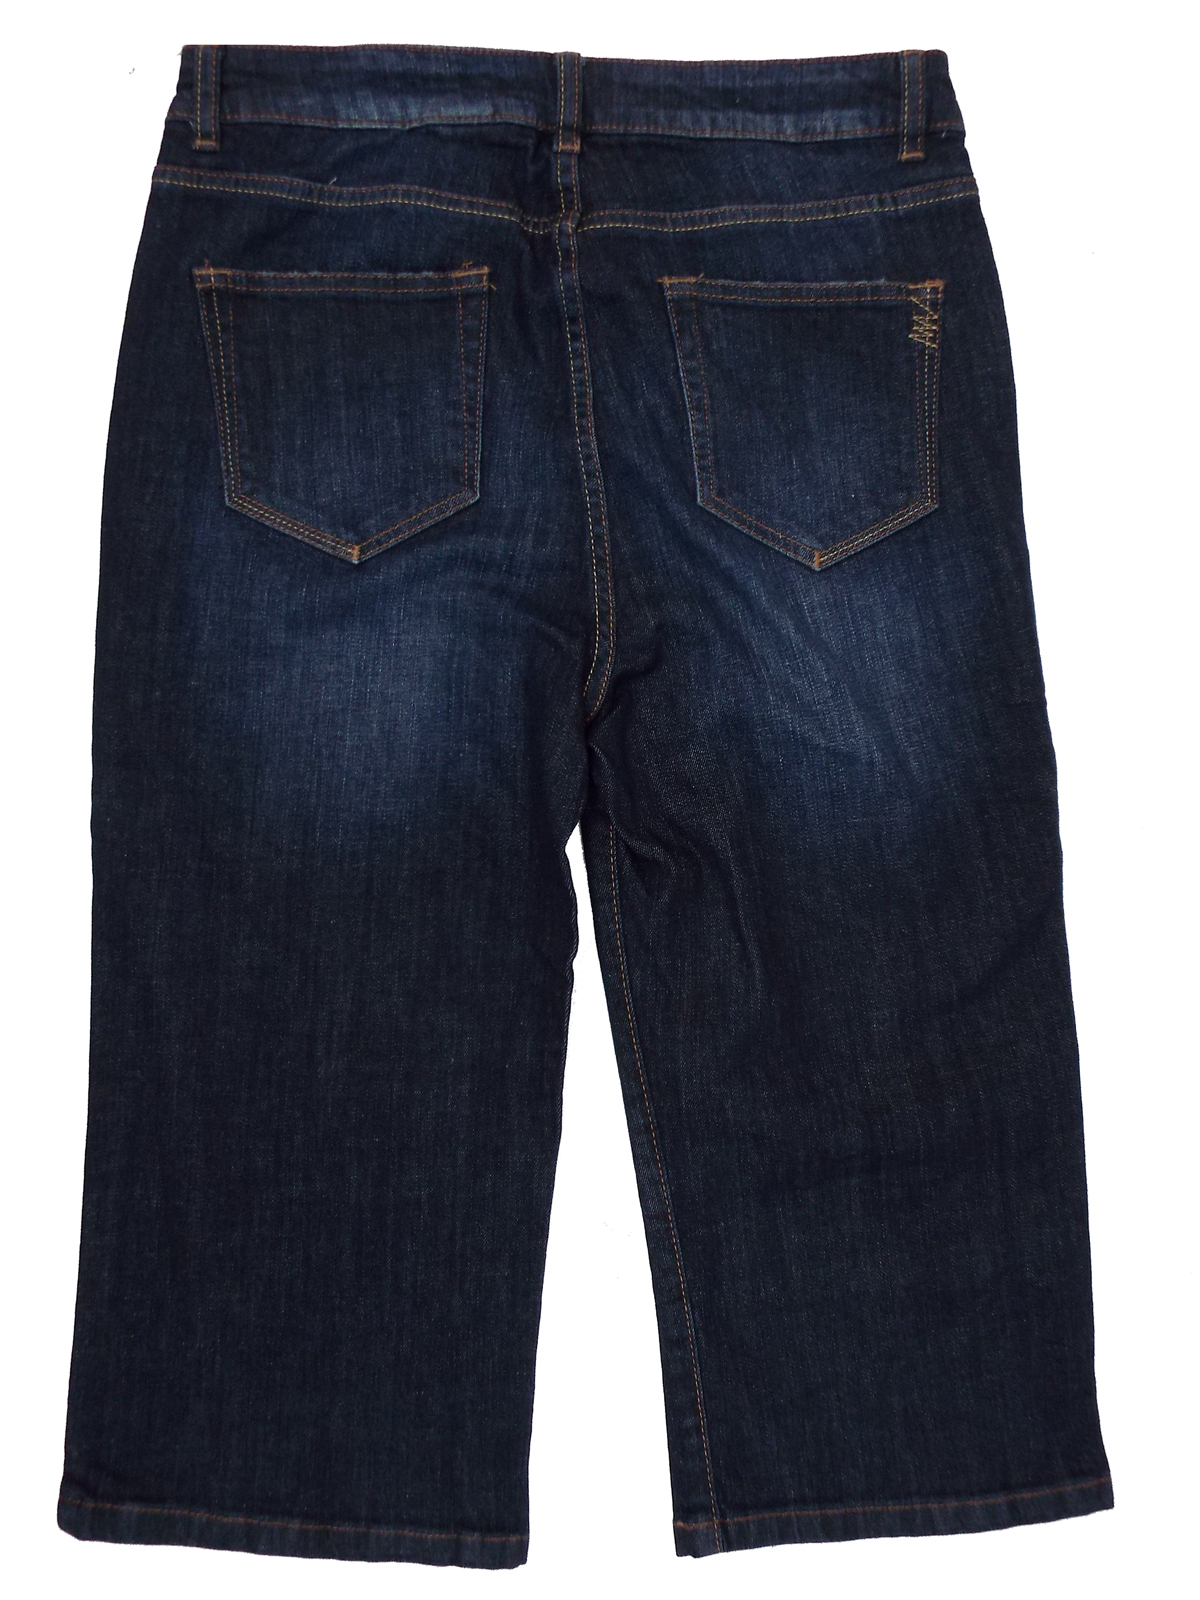 N3XT DARK-BLUE Cotton Rich Denim Knee Shorts - Size 10 to 20